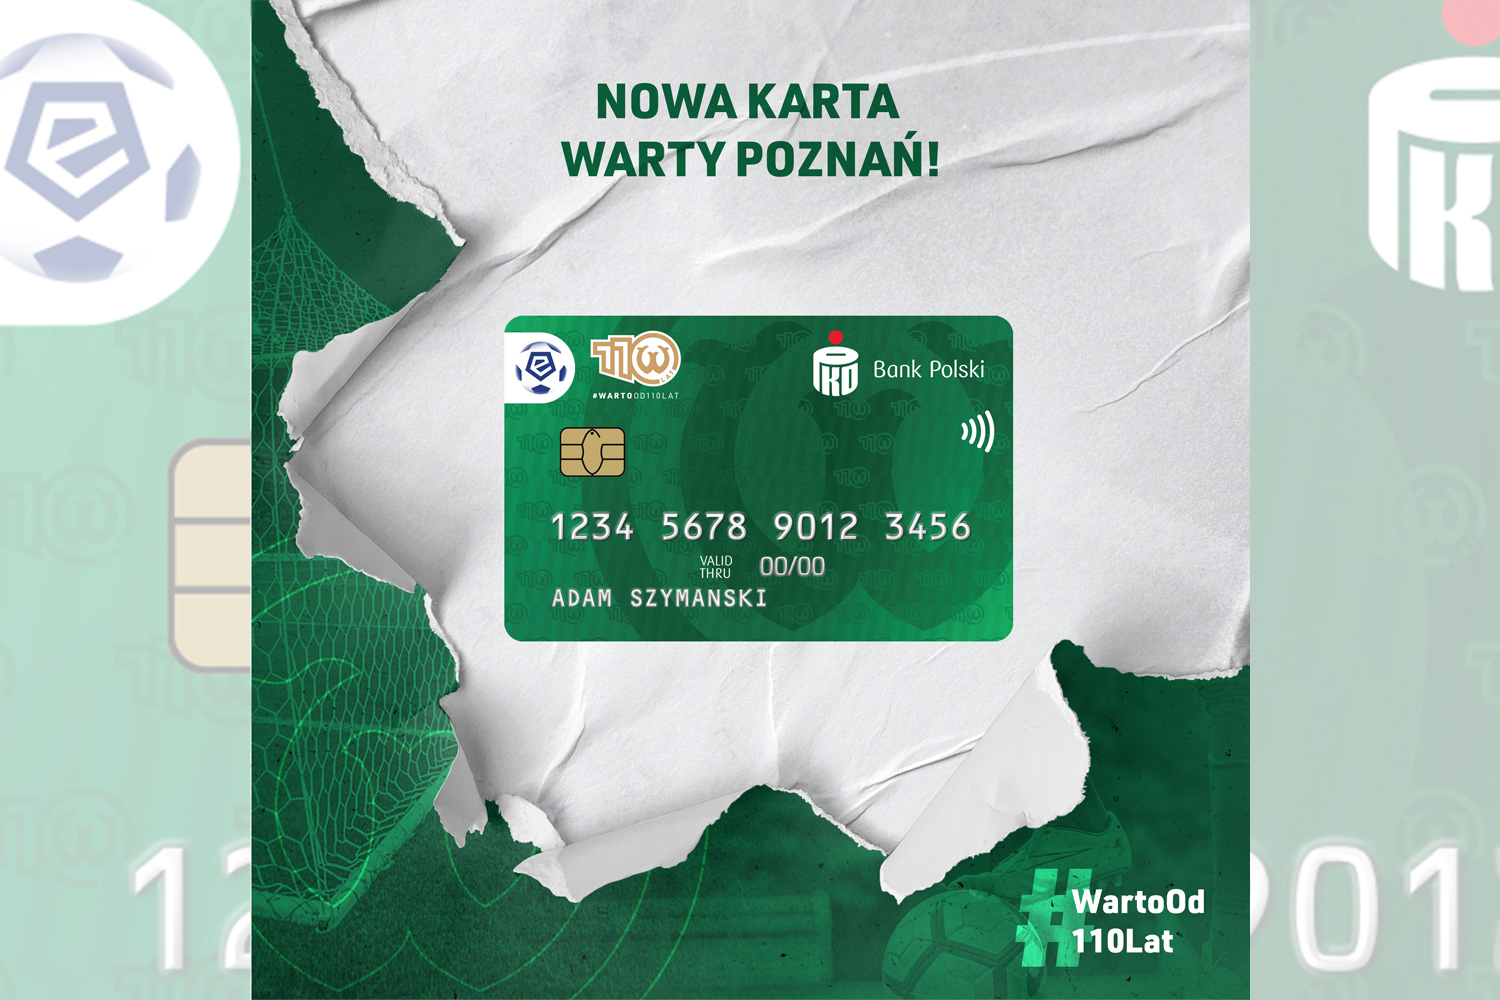 Nowa karta Warty Poznań z okazji 110-lecia Klubu